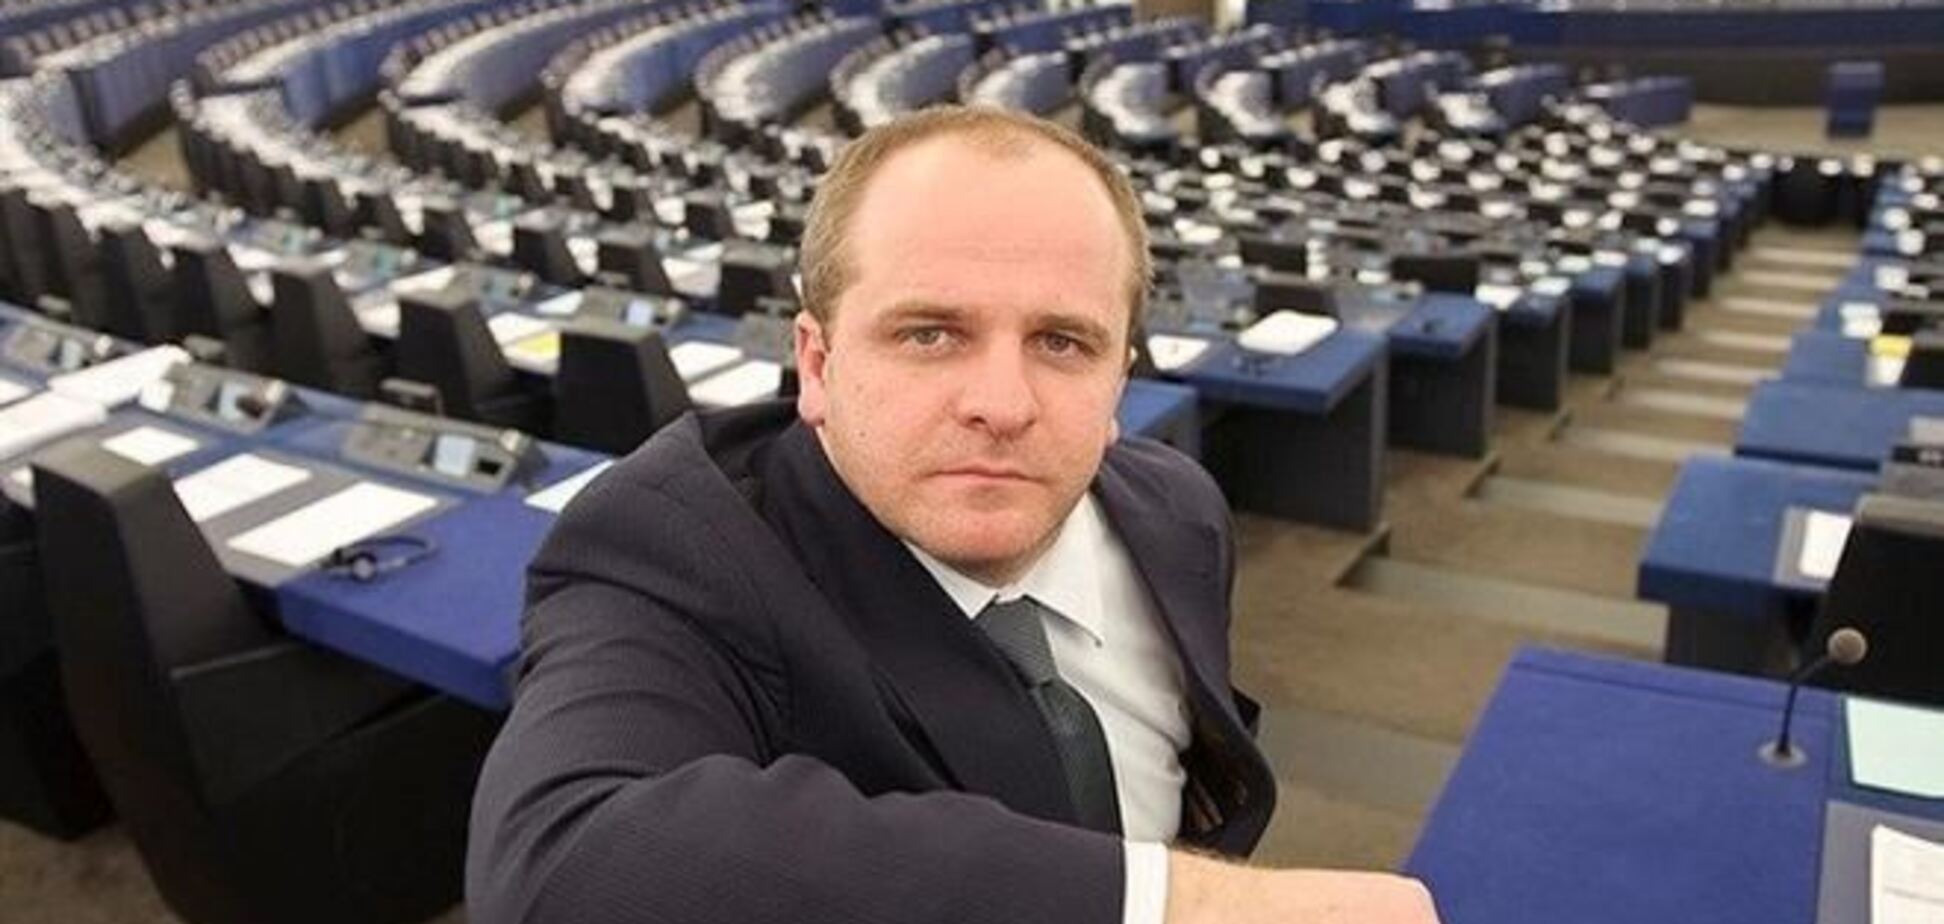 Санкции ЕС против украинских чиновников поставят крест на Соглашении - евродепутат